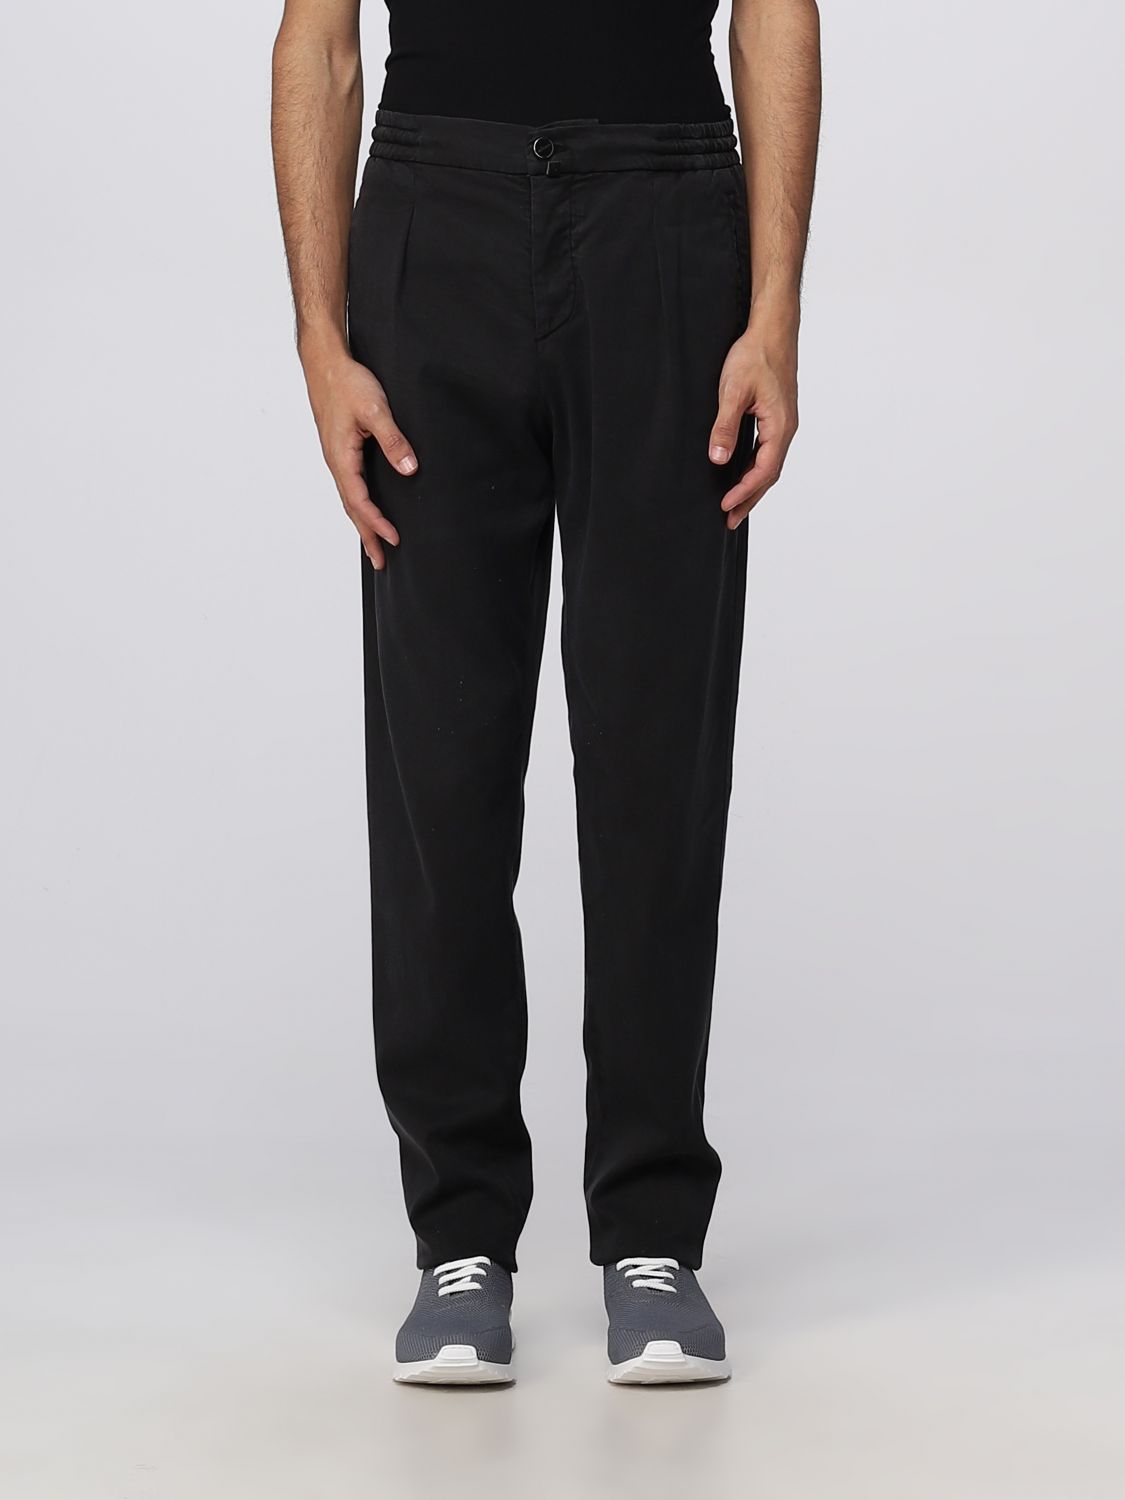 KITON: pants for man - Black | Kiton pants UP1LACJ0736B17 online on ...